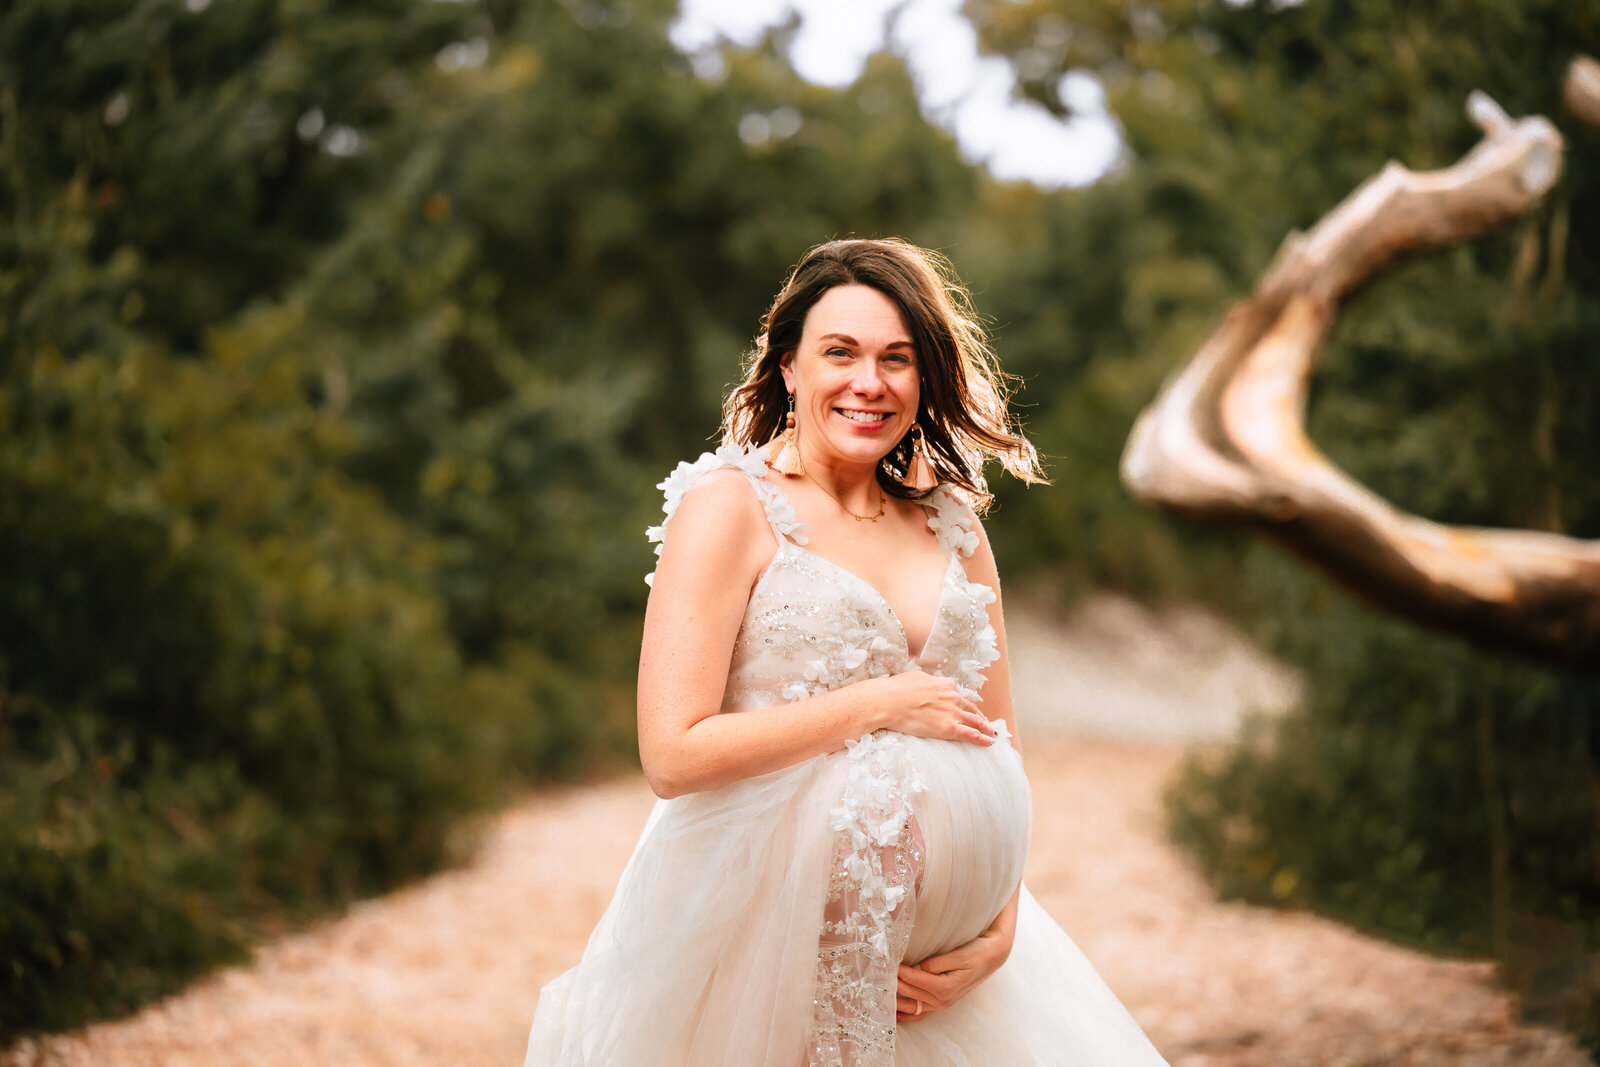 Arlington Maternity Photography